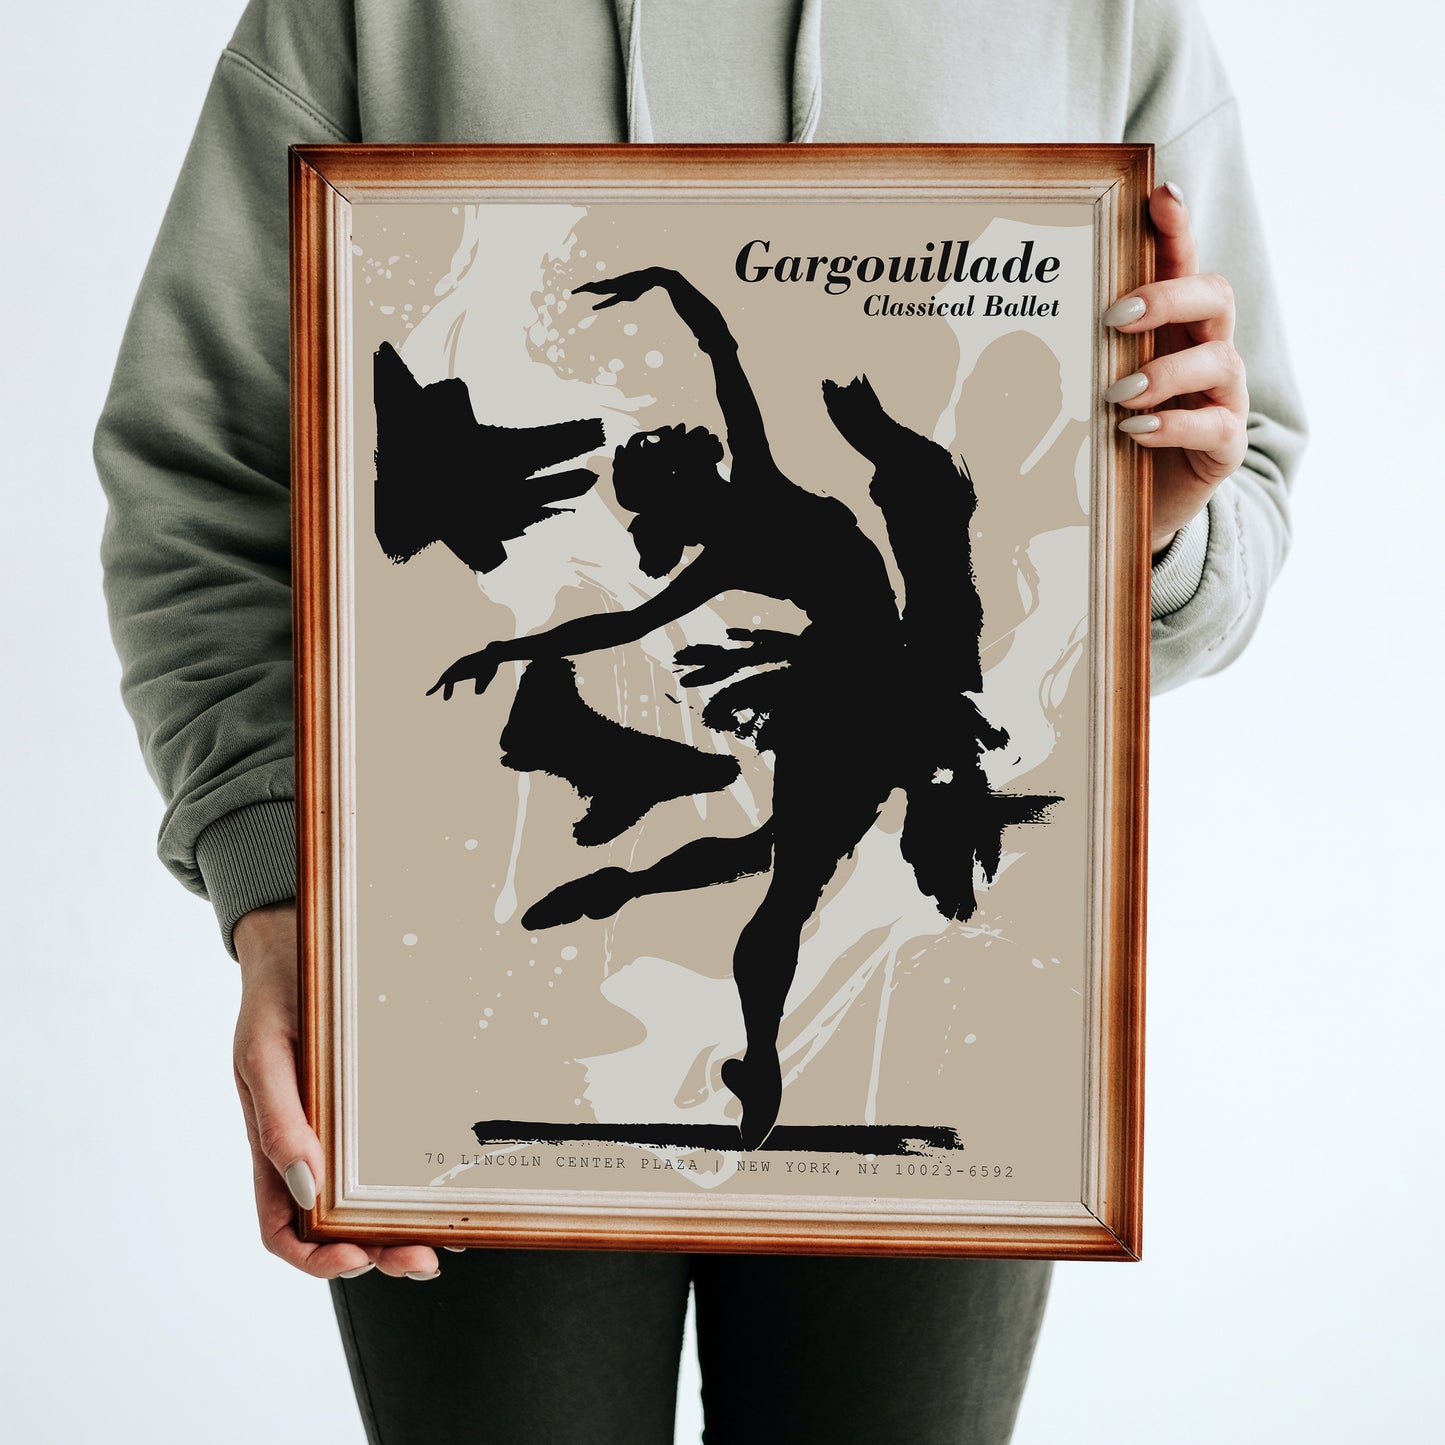 Gargouillade Ballet Art Print